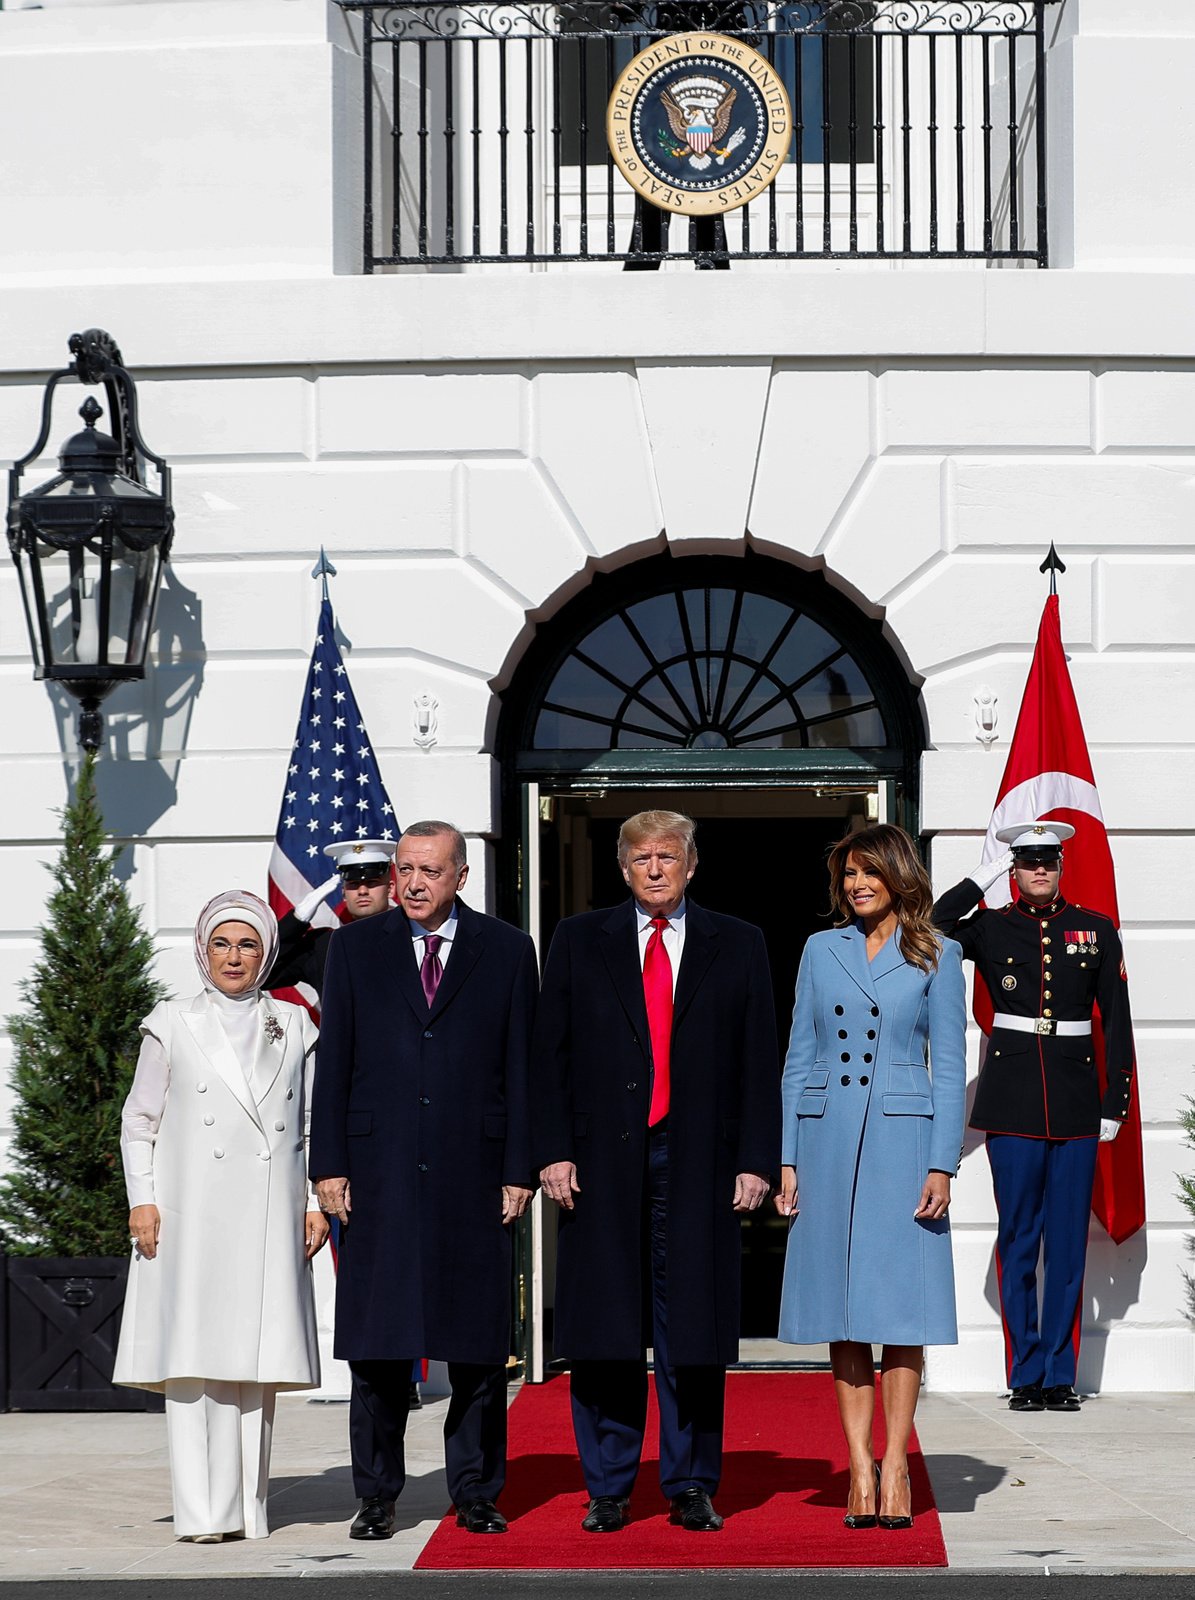 Prezident USA Donald Trump s manželkou Melanií, tureckým prezidentem Recepem Erdoganem a jeho ženou Emine.